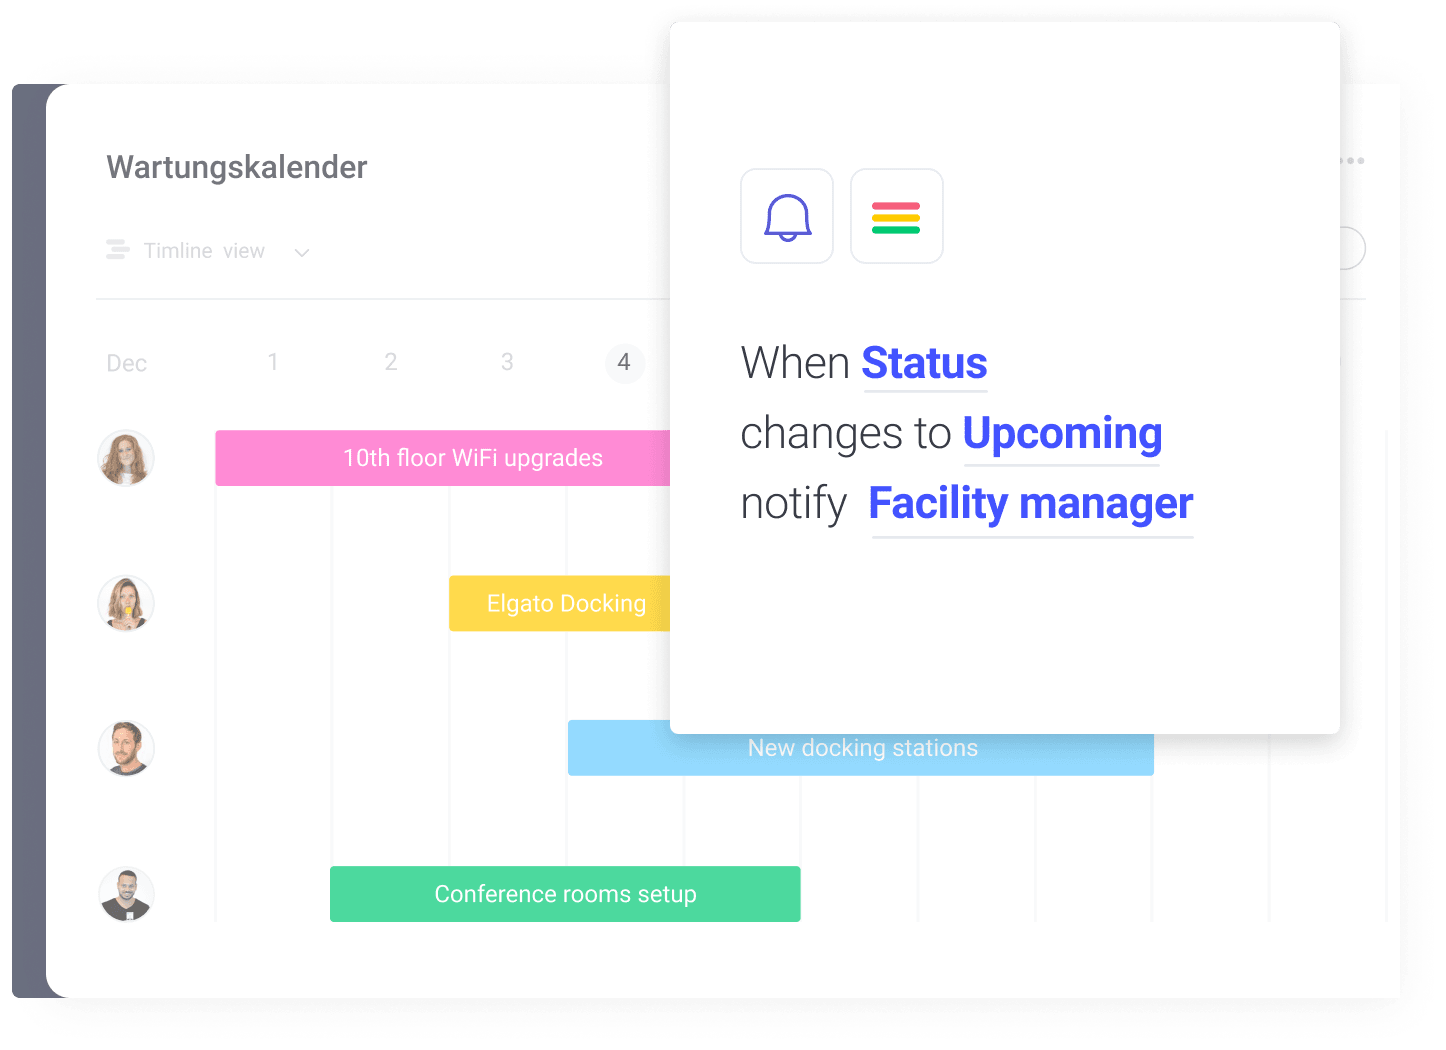 Darstellung von einem Automatisierungsrezept und einem Wartungskalender,  welche im Bereich Facility Management eingesetzt werden können